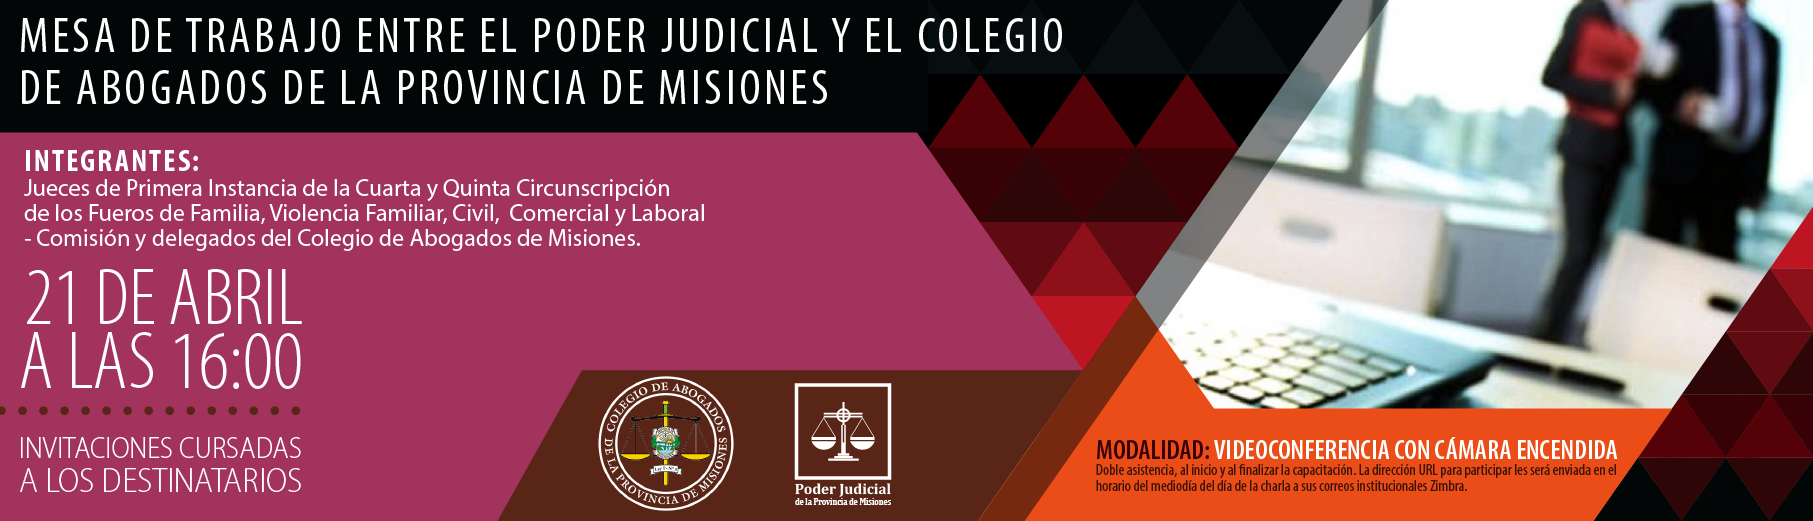 P3_Mesa_de_Trabajo_con_Jueces_y_el_Colegio_de_Abogados-01